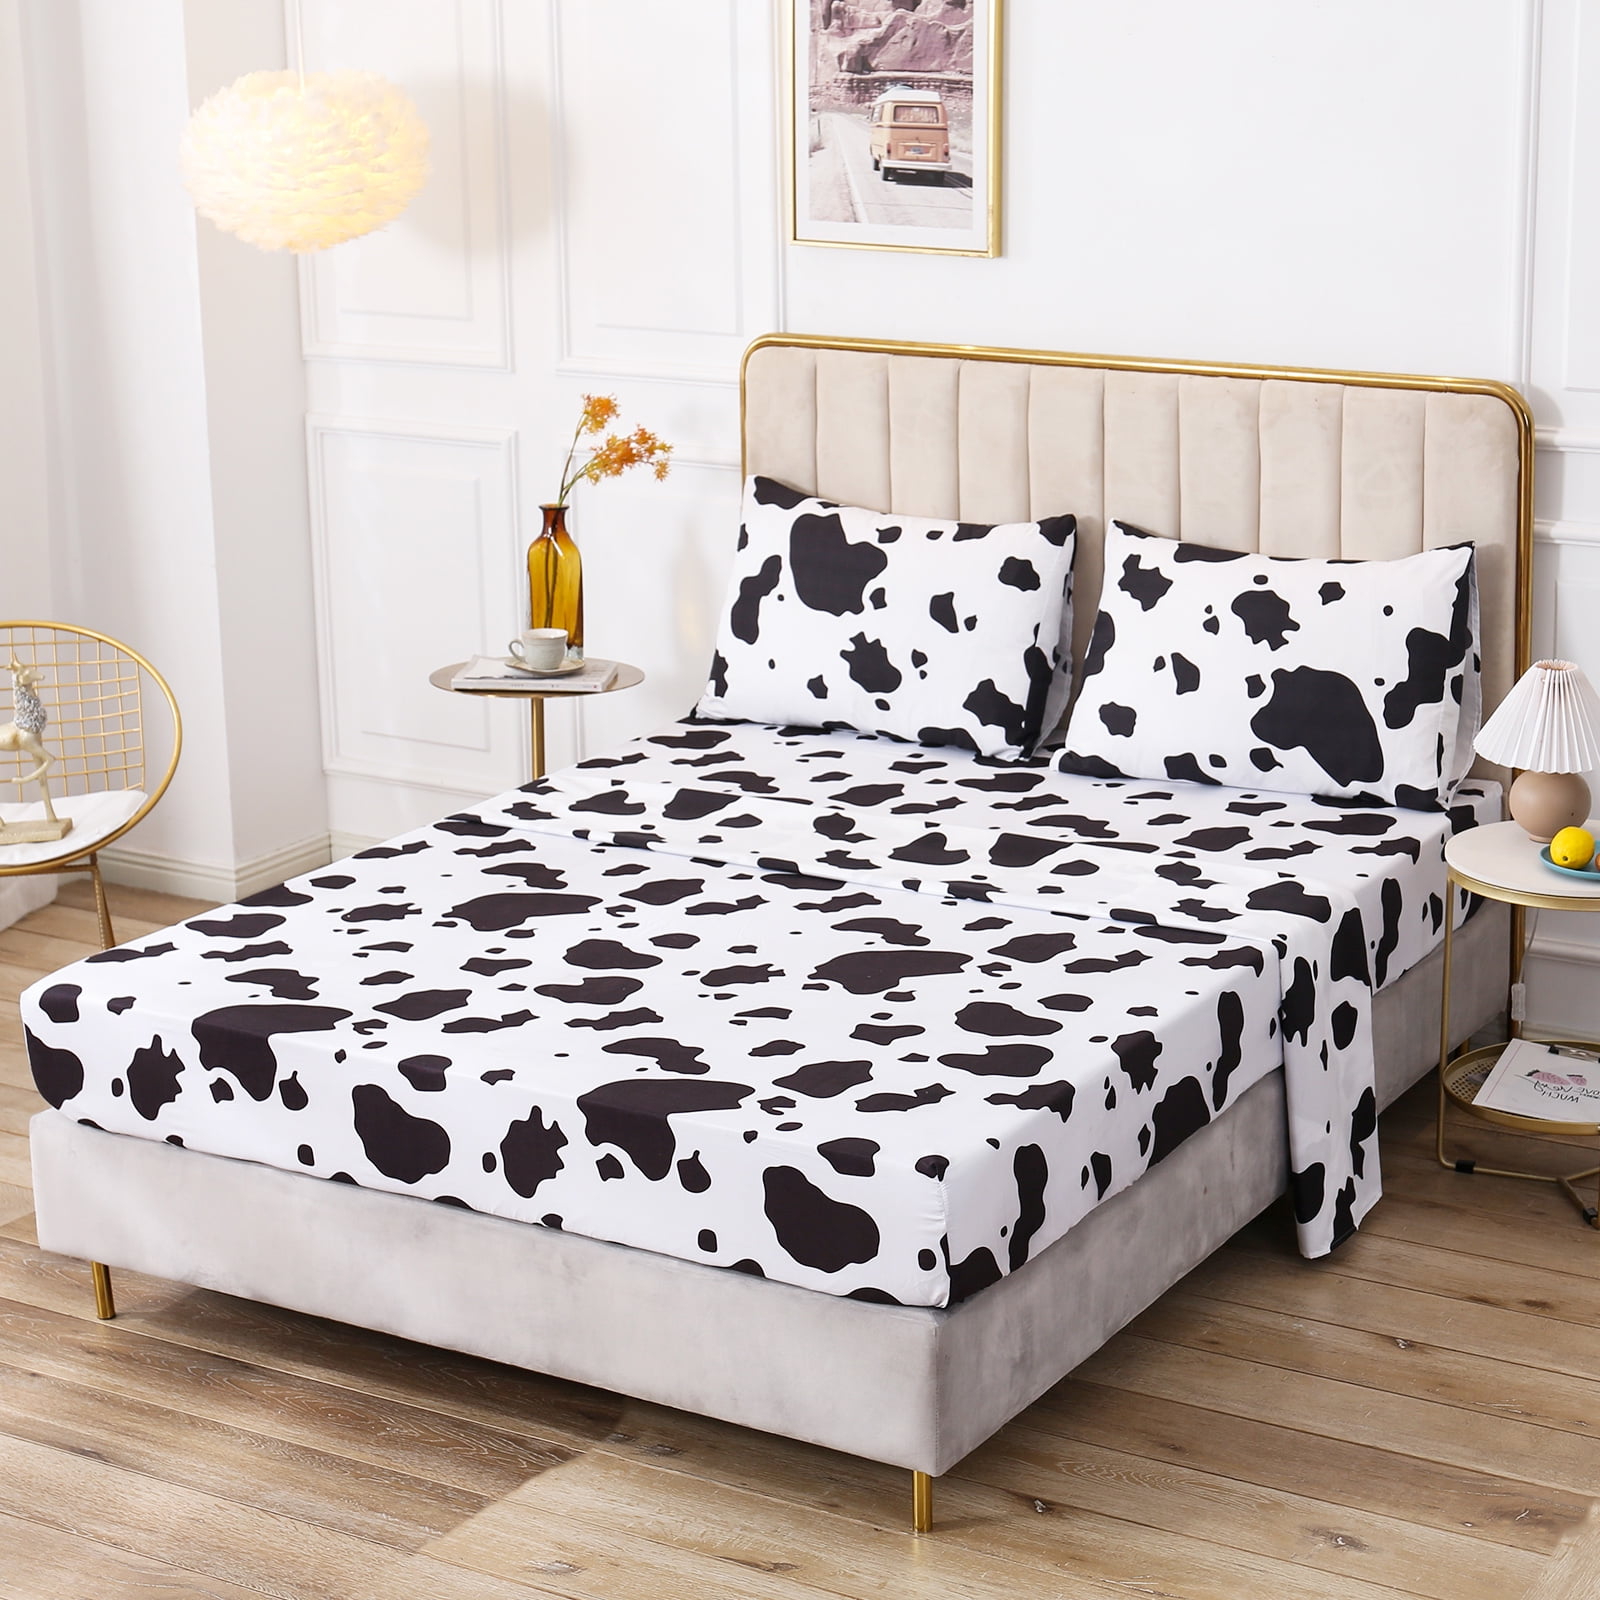 Anminy Sheet Set Bedding Cow Printed Comforter Set Microfiber King 6084